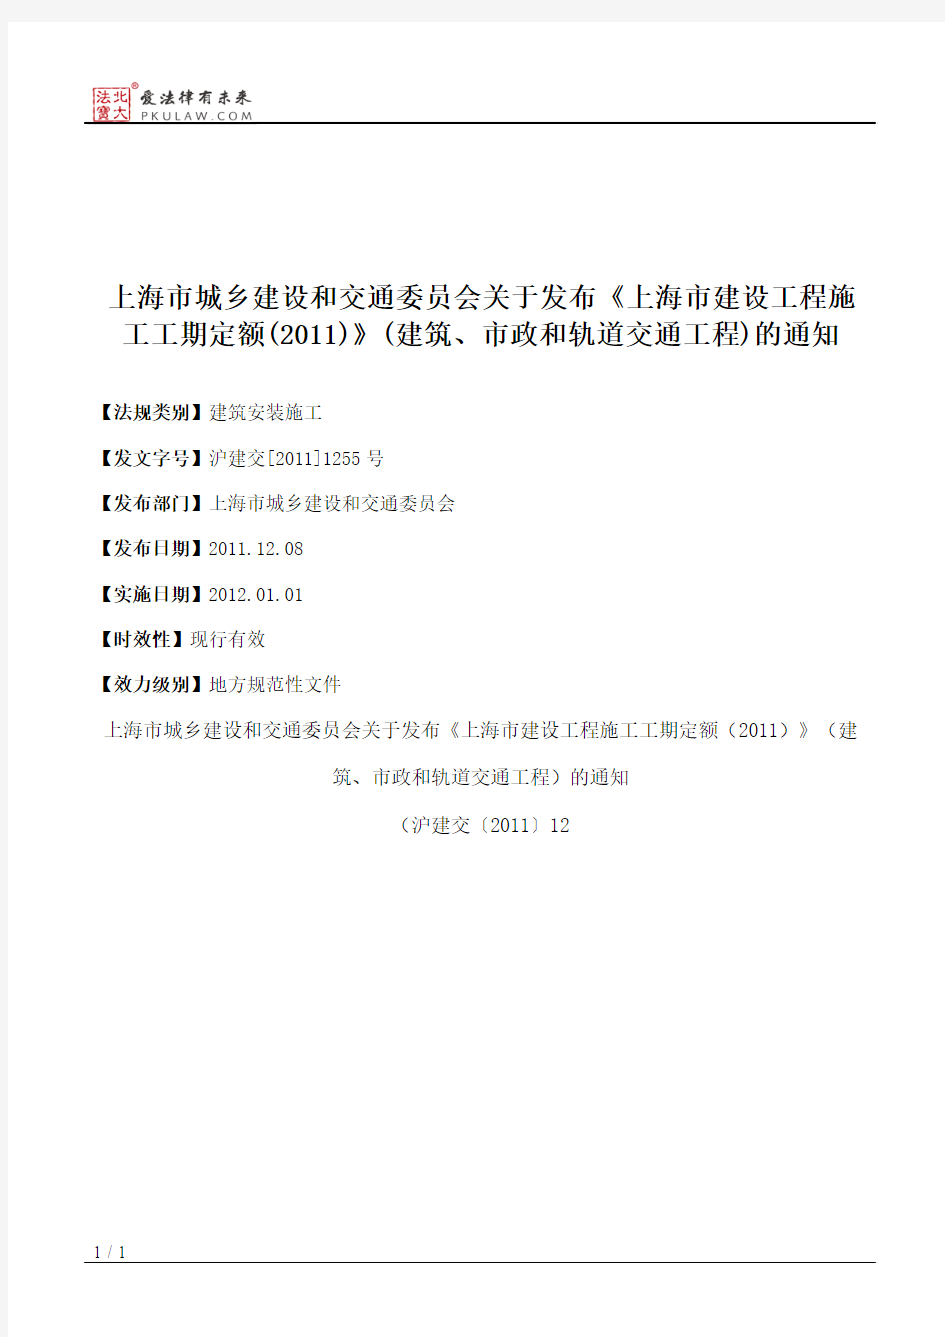 上海市城乡建设和交通委员会关于发布《上海市建设工程施工工期定